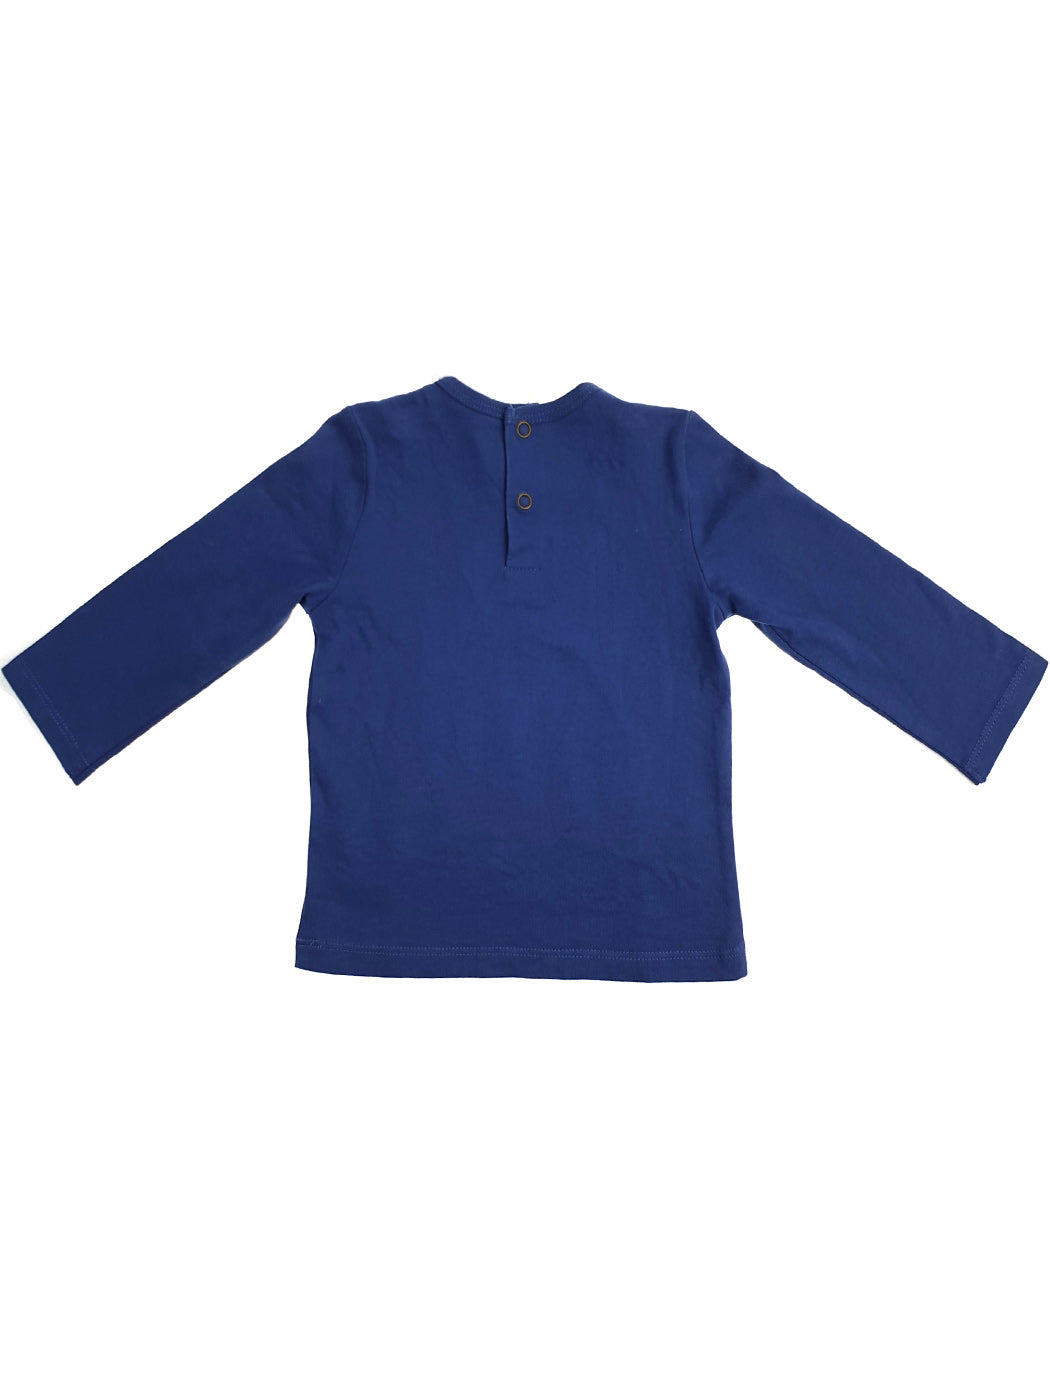 Cotton baby t-shirt - CM10142 Blue